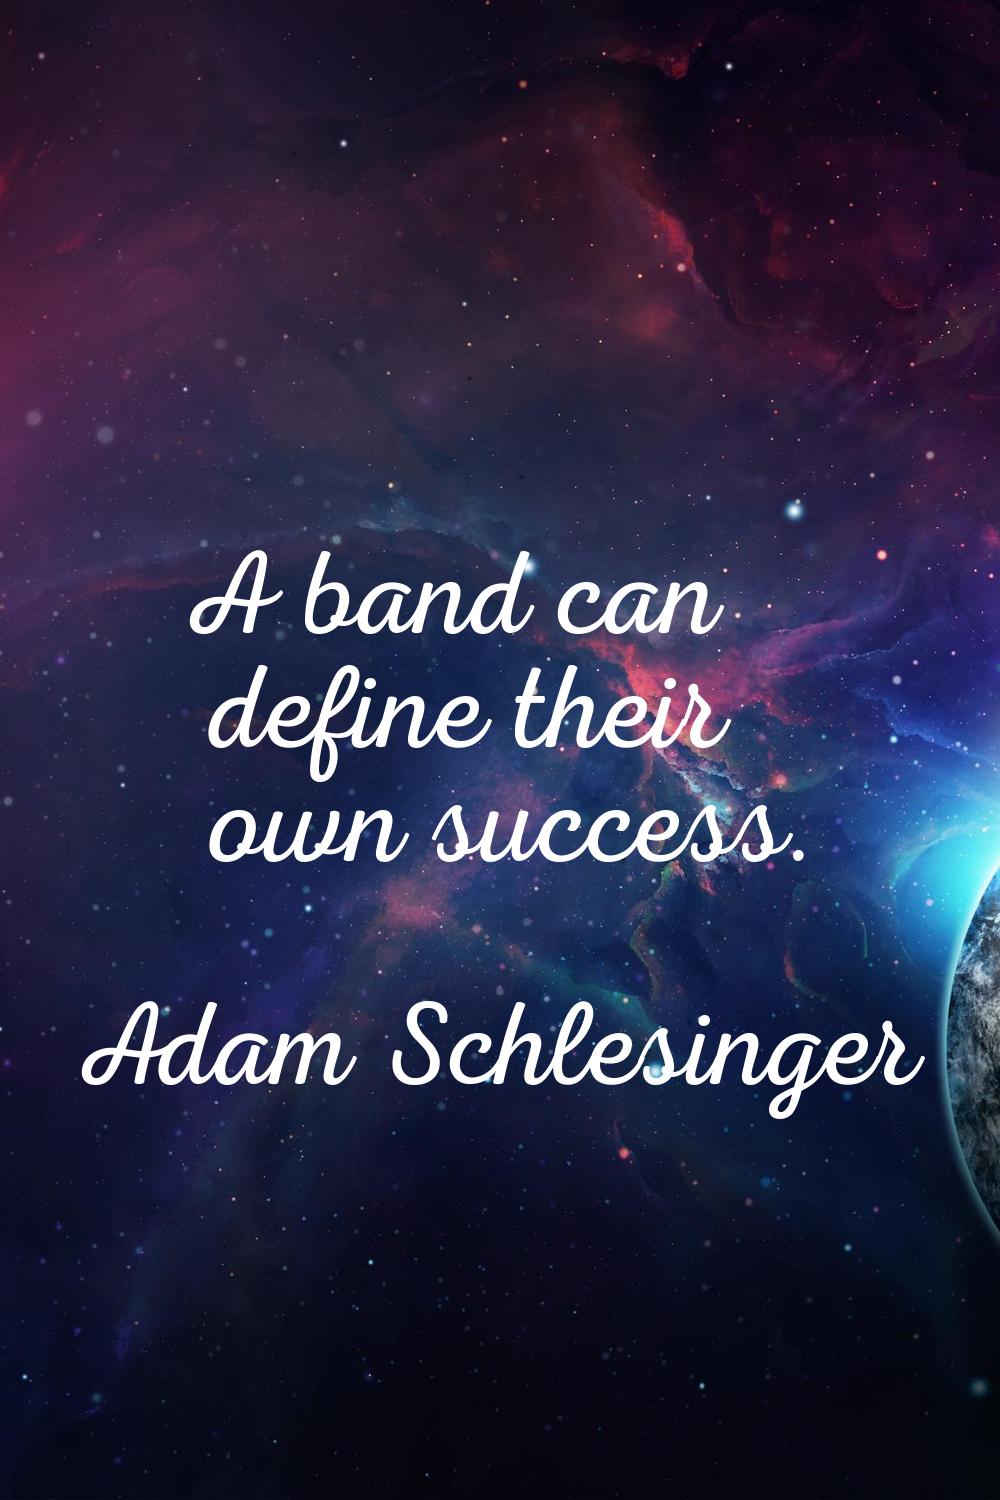 A band can define their own success.